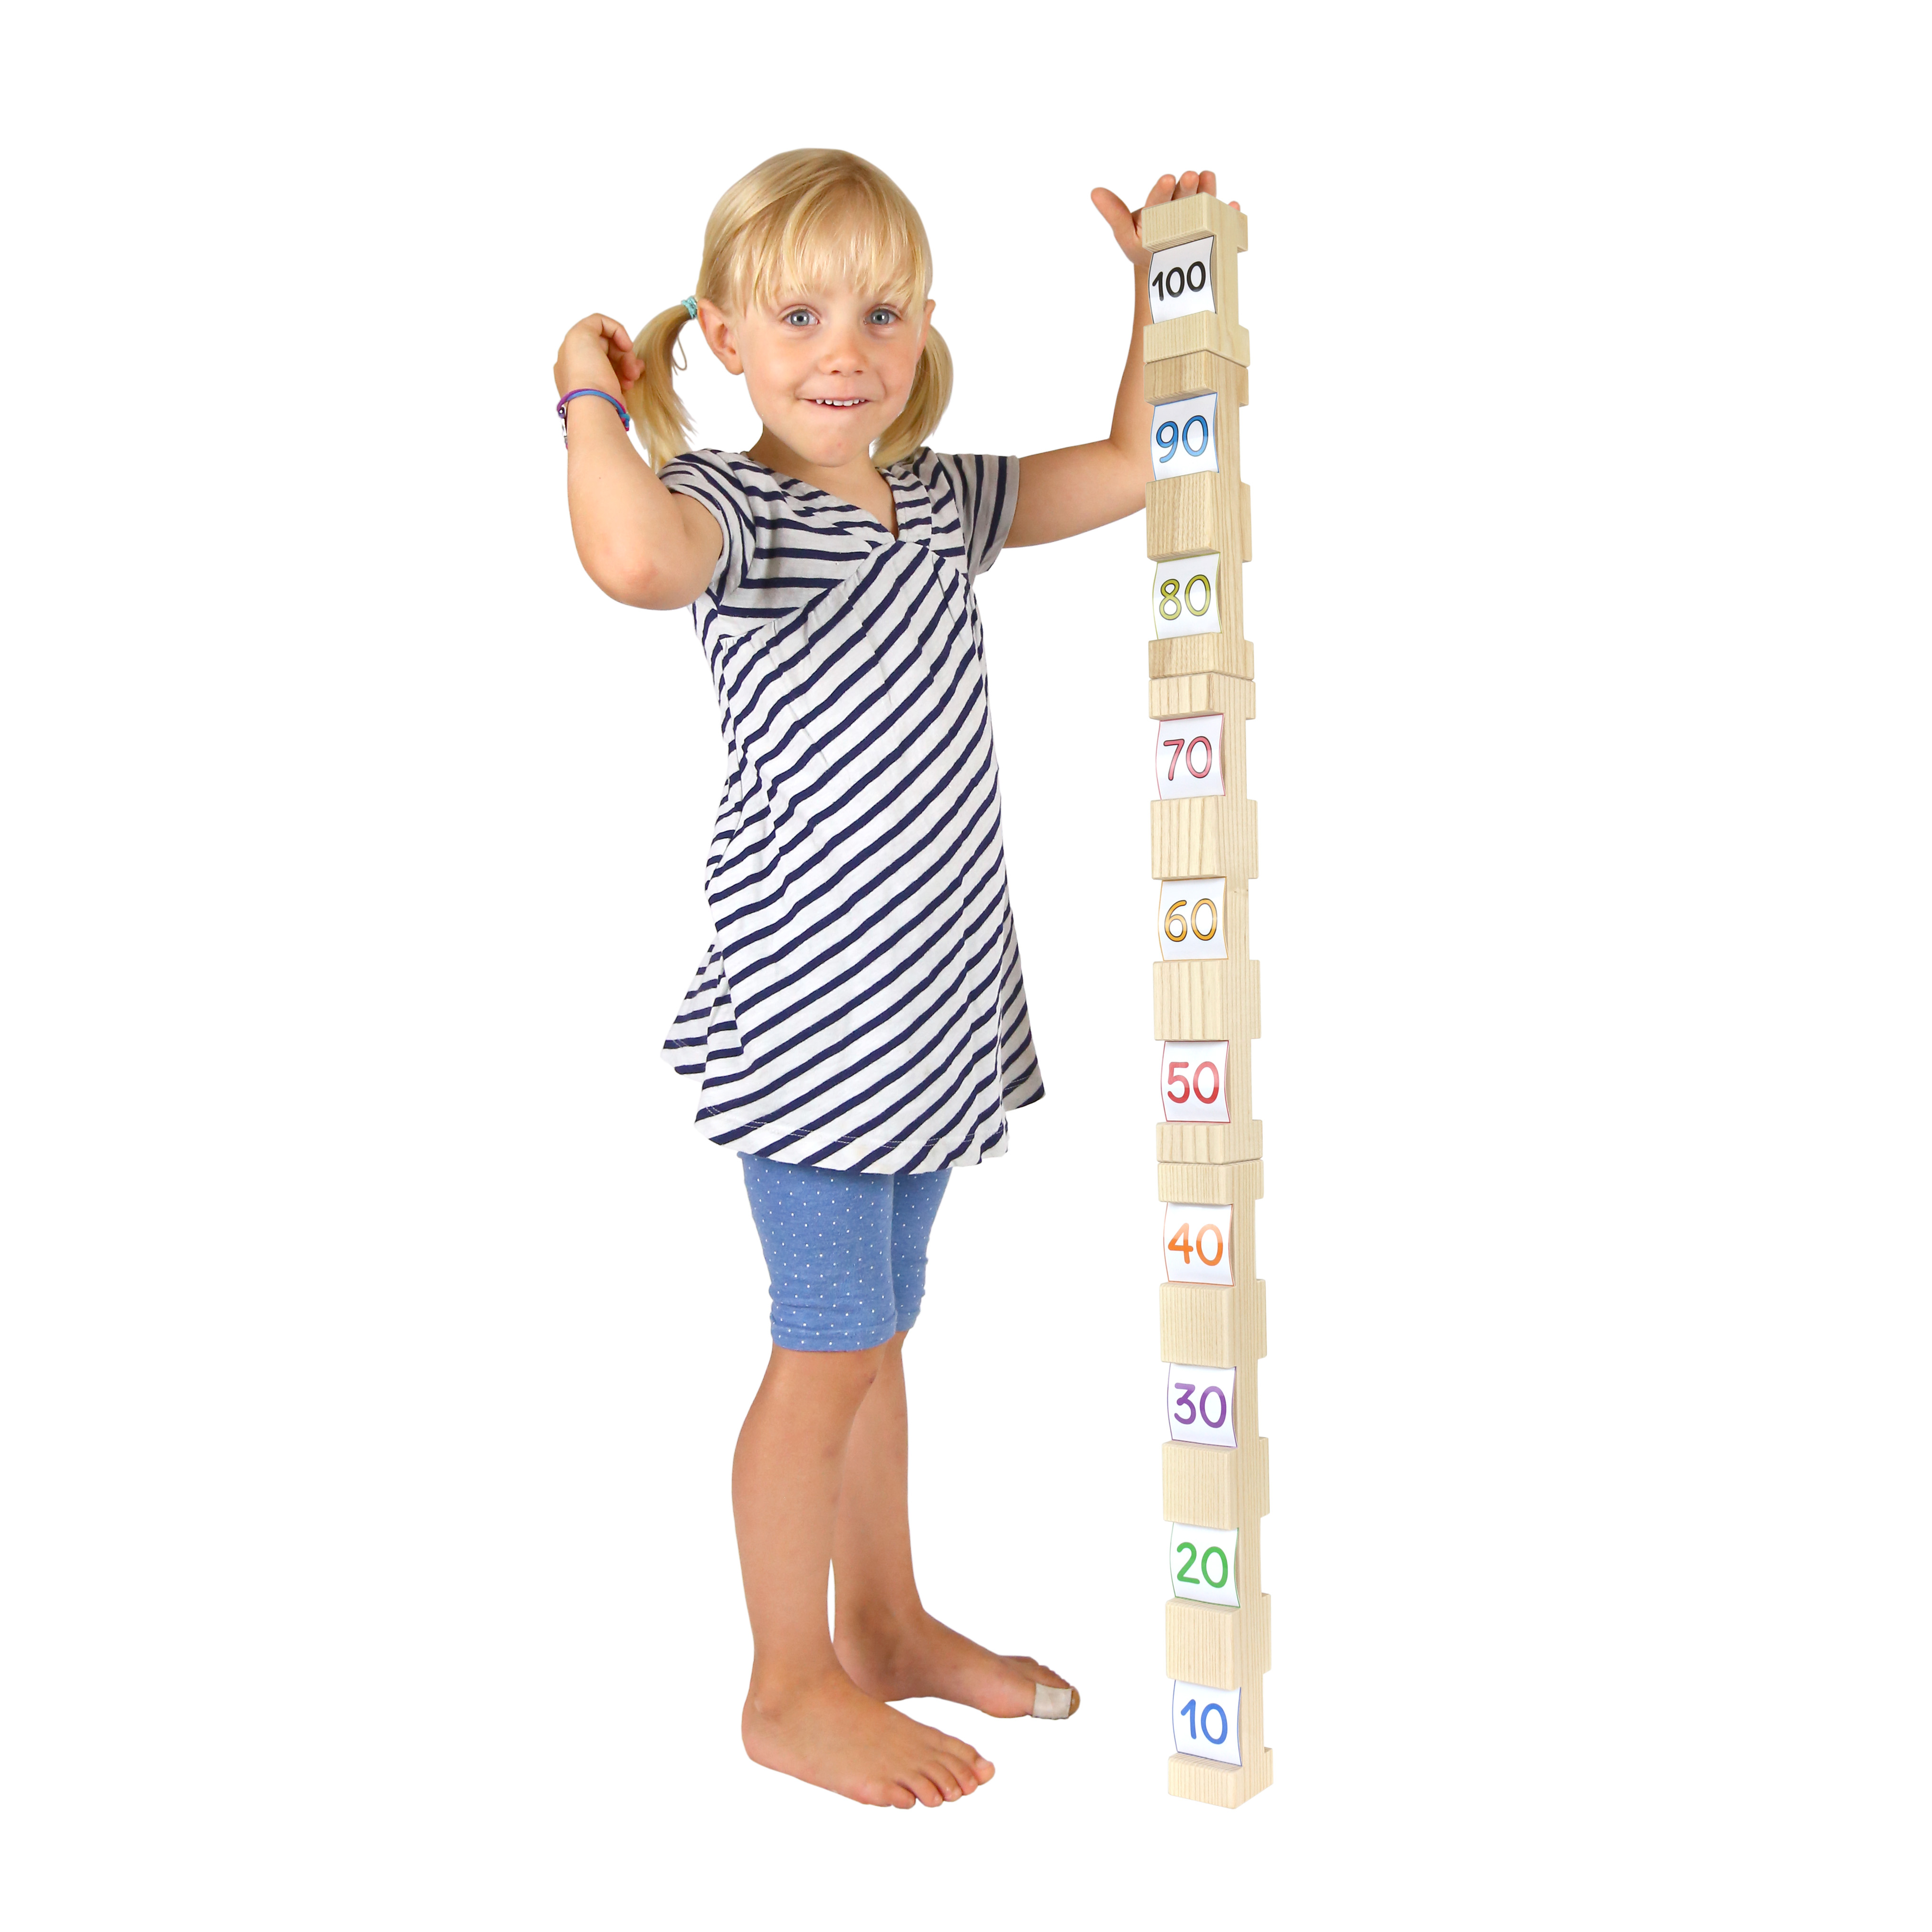 Kind misst sich mit 4/4 Bausteinen ab: alle 4 Bausteine zusammen ergeben genau 100 cm.